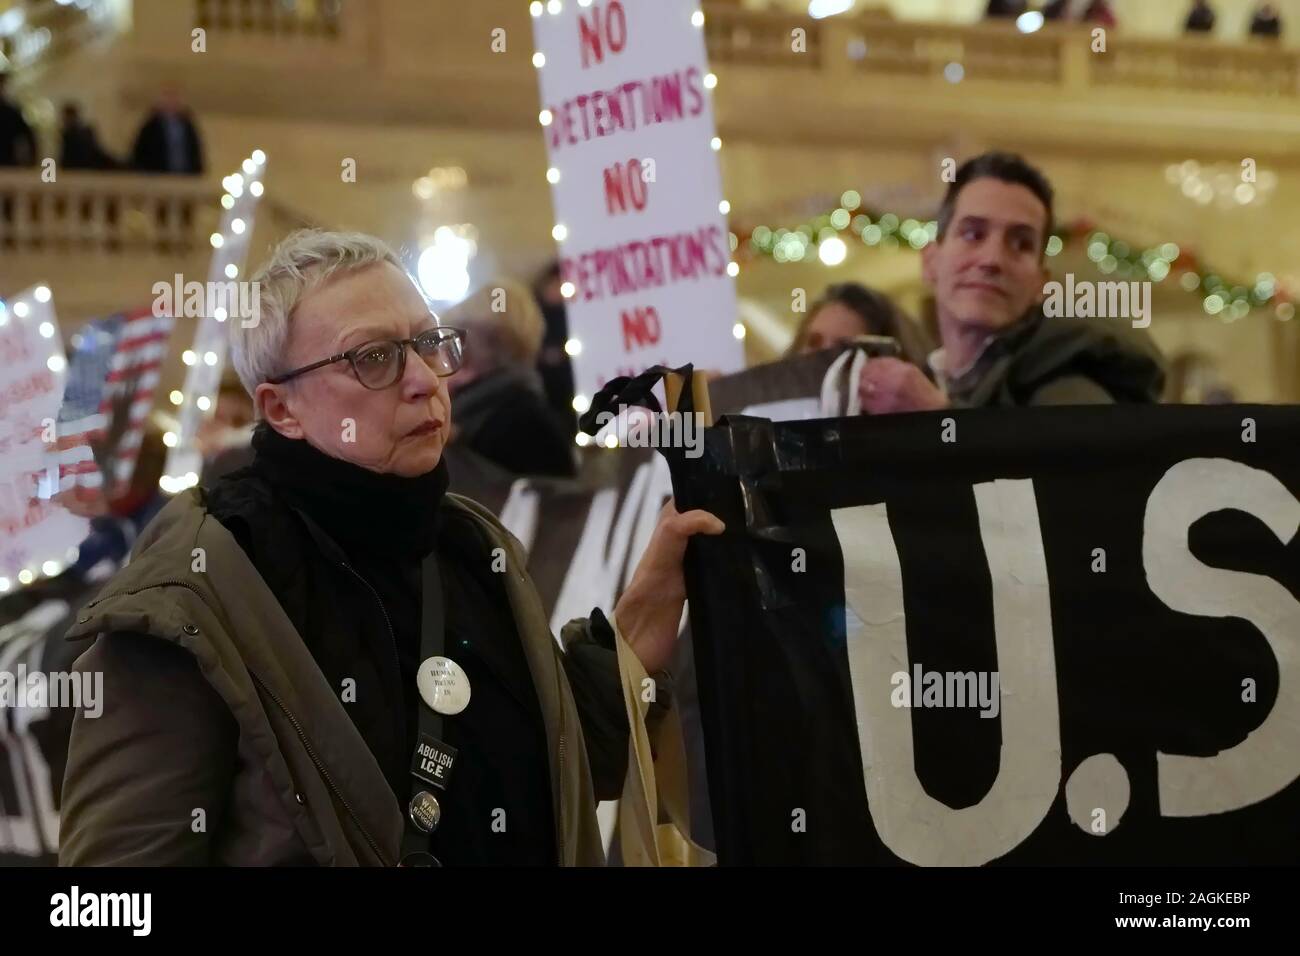 Nueva York, NY / USA - Diciembre 19, 2019: activista del grupo auge y resistir a NYC sostiene una pancarta y mira estoicamente durante una protesta silenciosa un Foto de stock